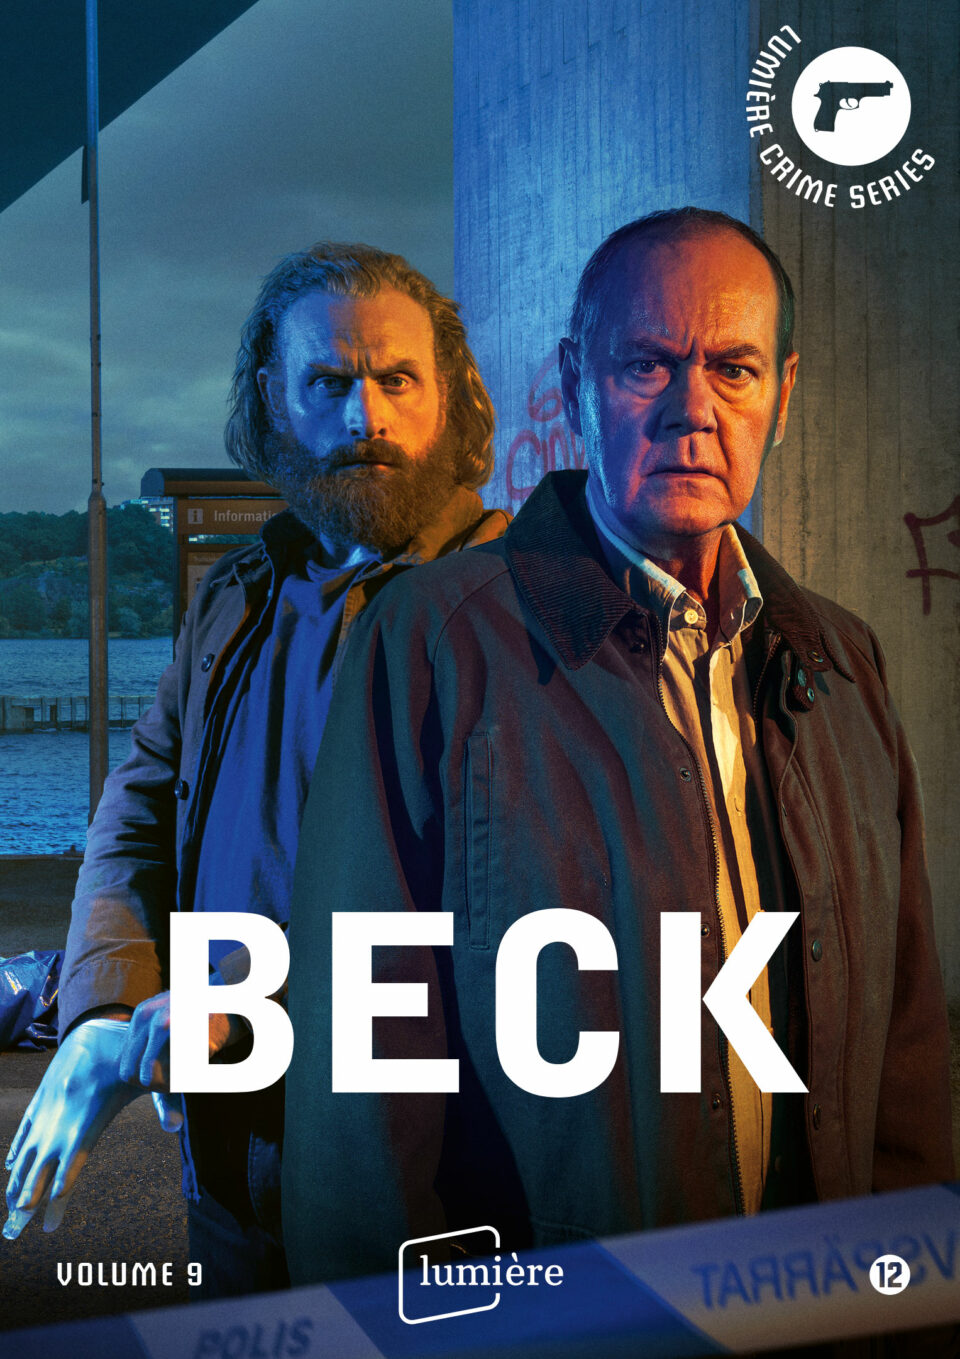 Beck 9 packshot